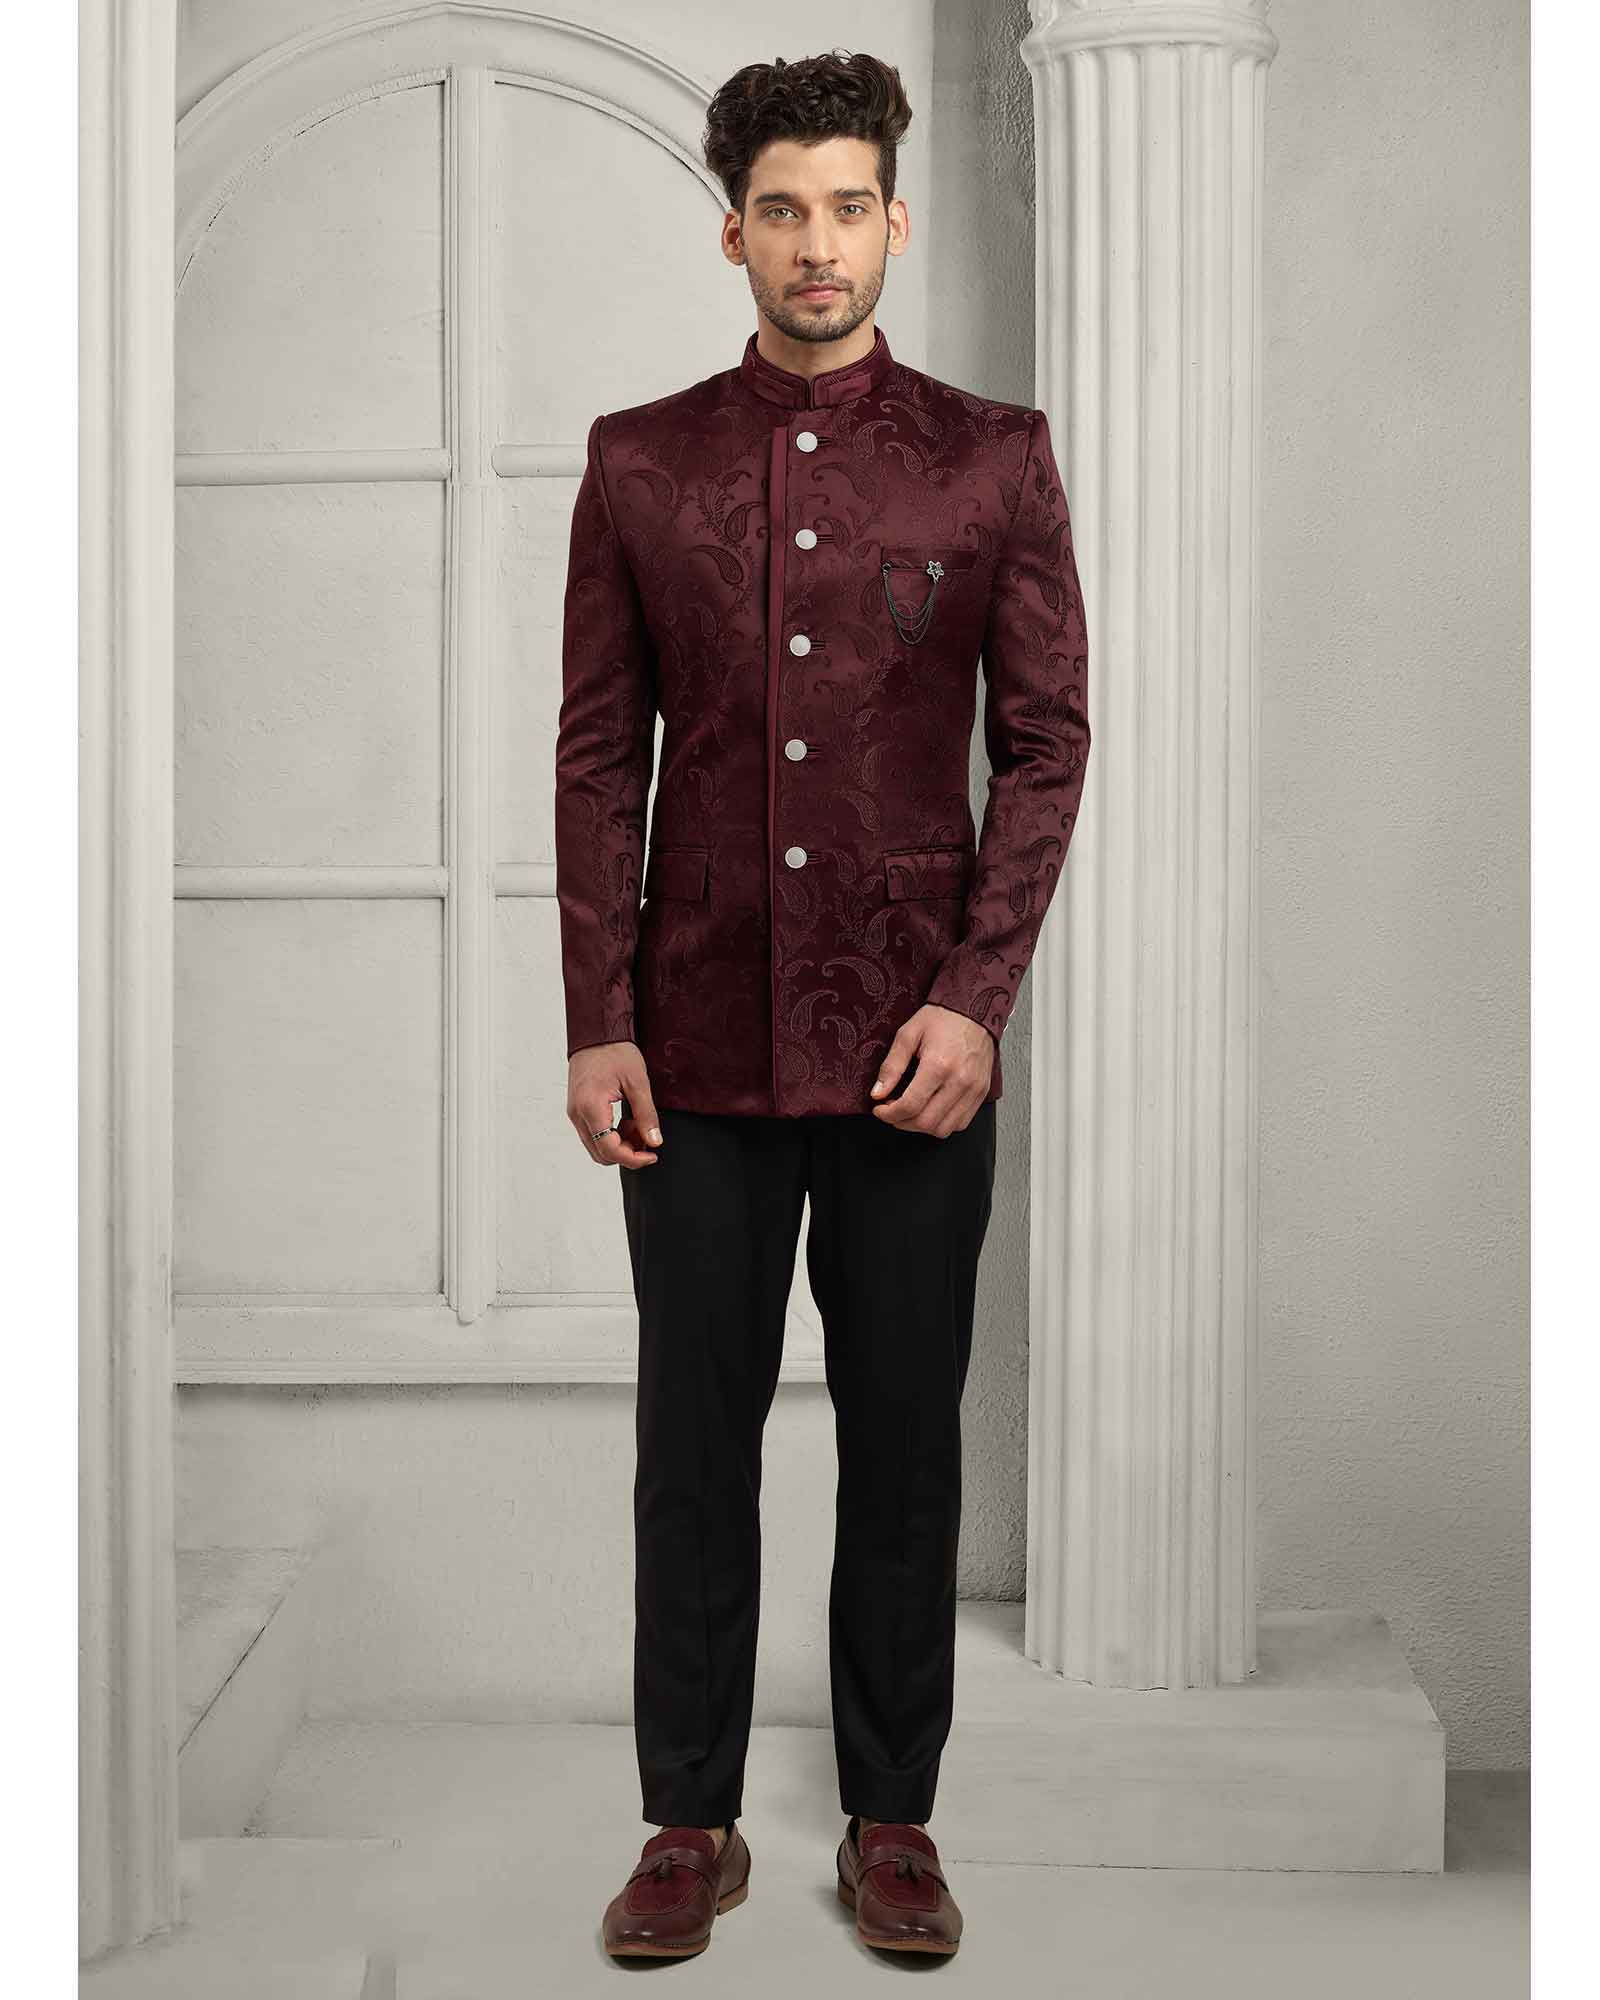 Jodhpuri Suit for Men, Wedding Suit, Valvet Suit, Indo Western Suit, Royal  Suit, Coat, Blazer, Custom Made Suit, Tailored, Partywear Suit, - Etsy